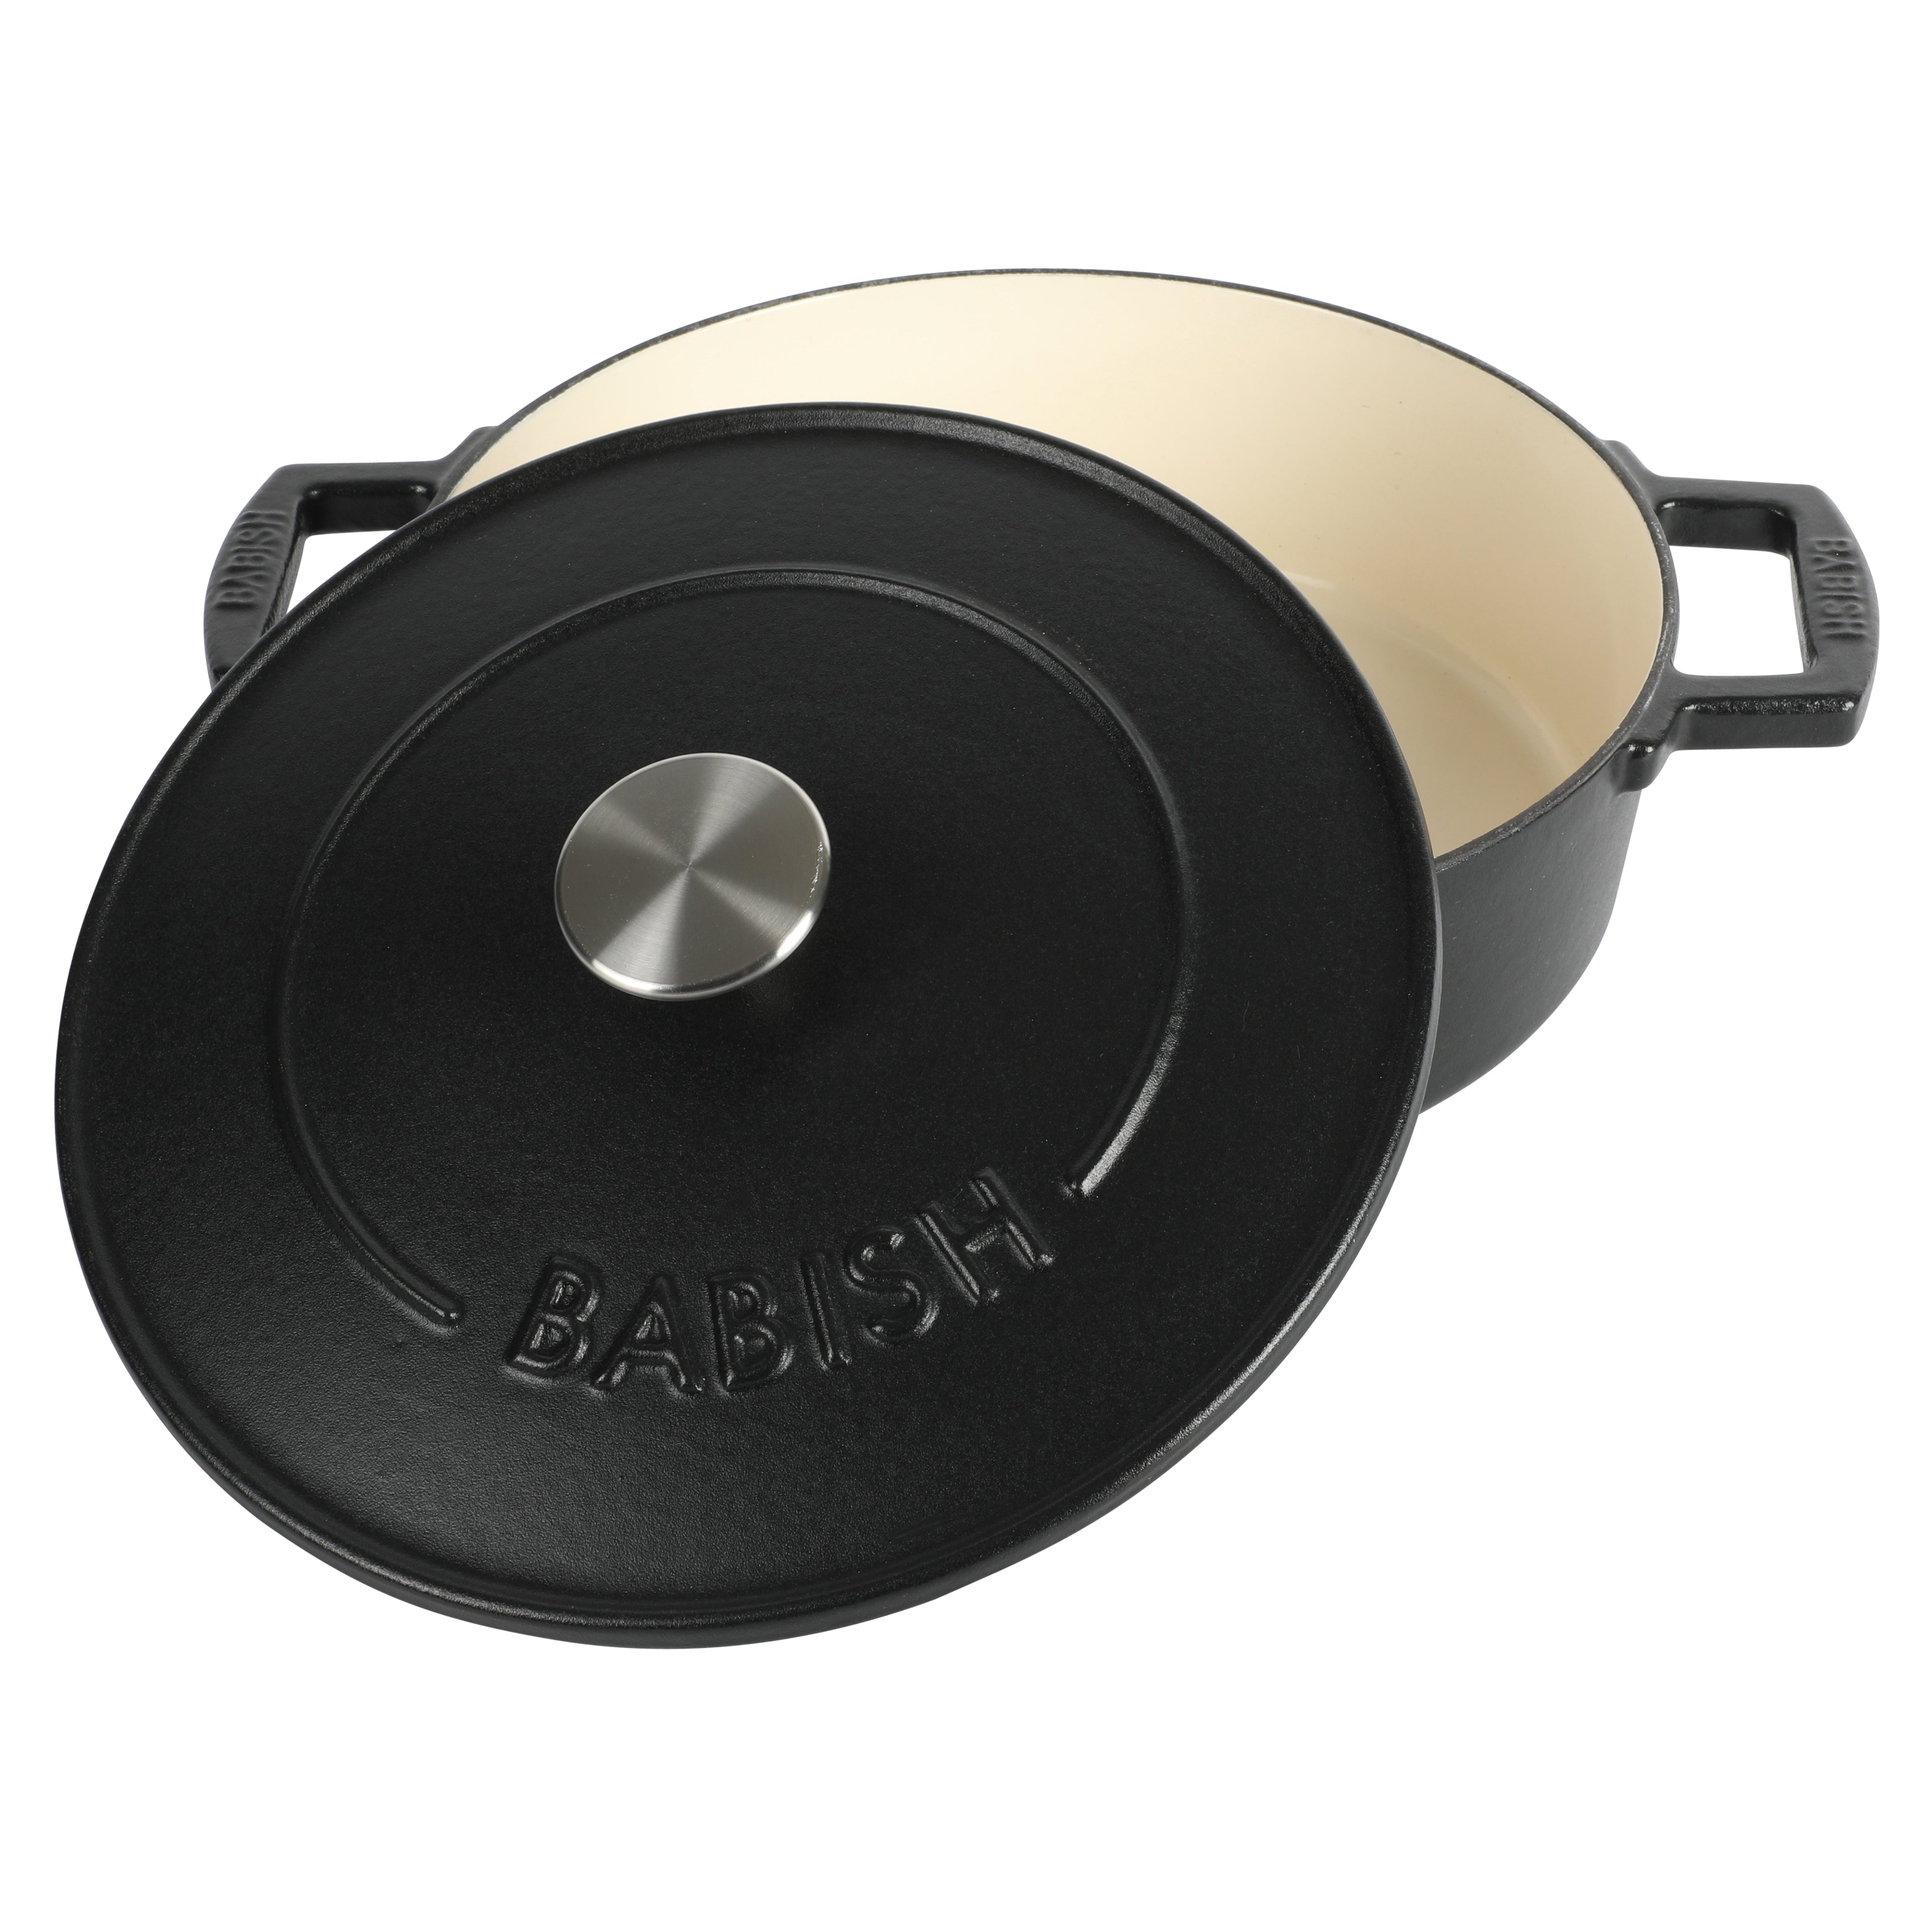 Crock Pot Artisan 13 Inch Preseasoned Cast Iron Rectangular Lasagna Pan